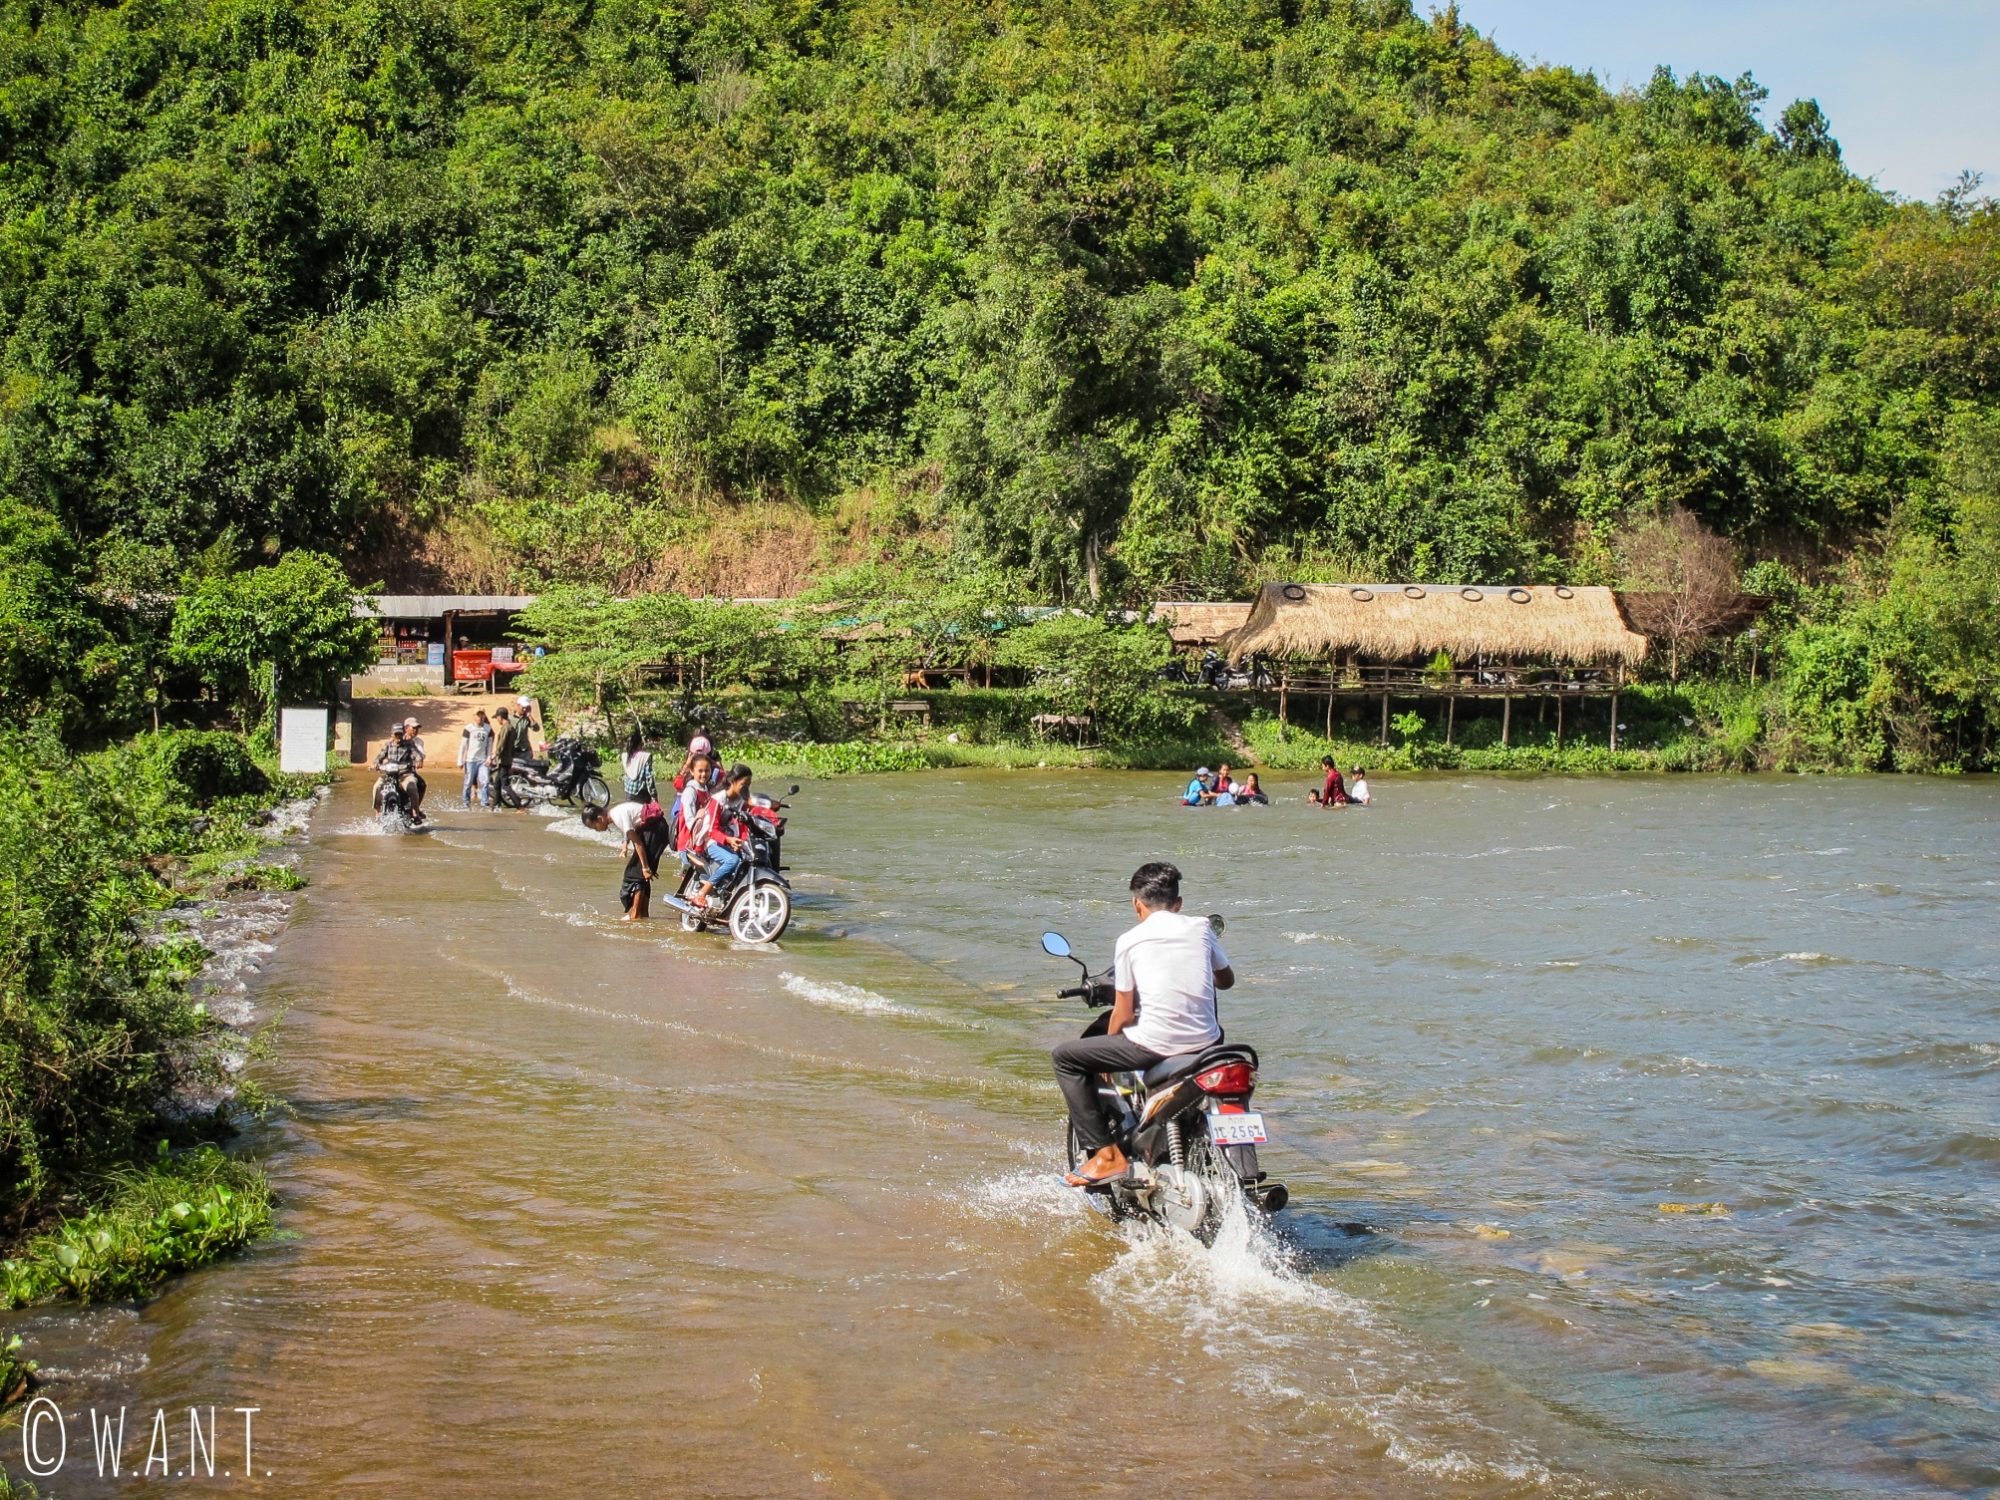 Les locaux viennent se baigner et laver leur scooter au Secret Lake près de Kampot